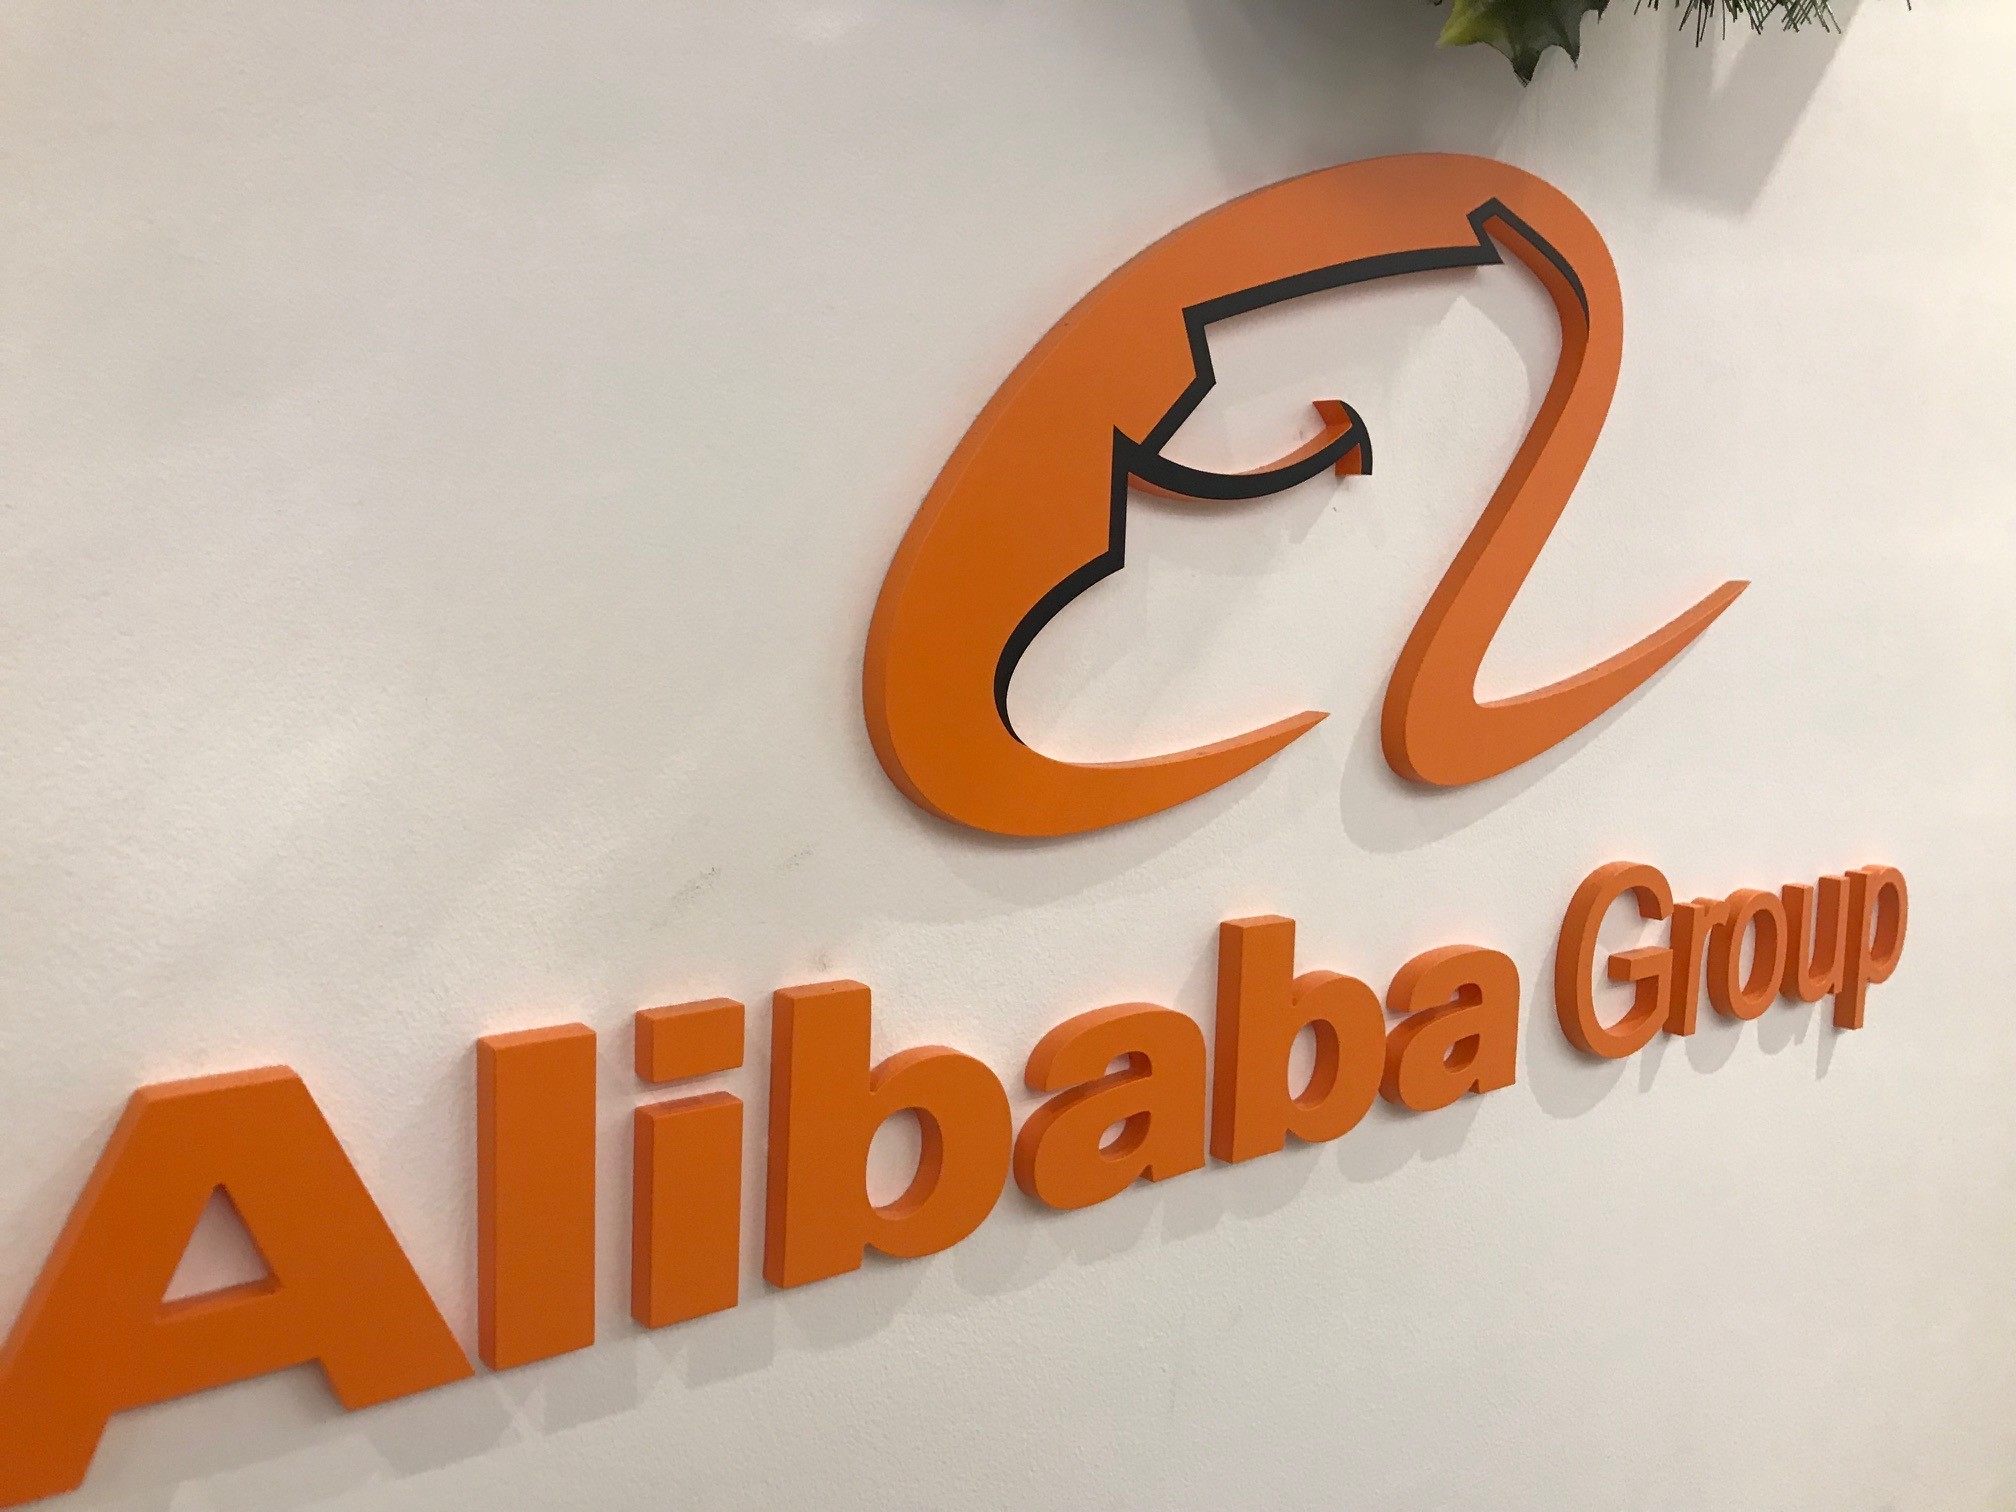 Vad betyder Alibabas värdering för ETF-marknaden?